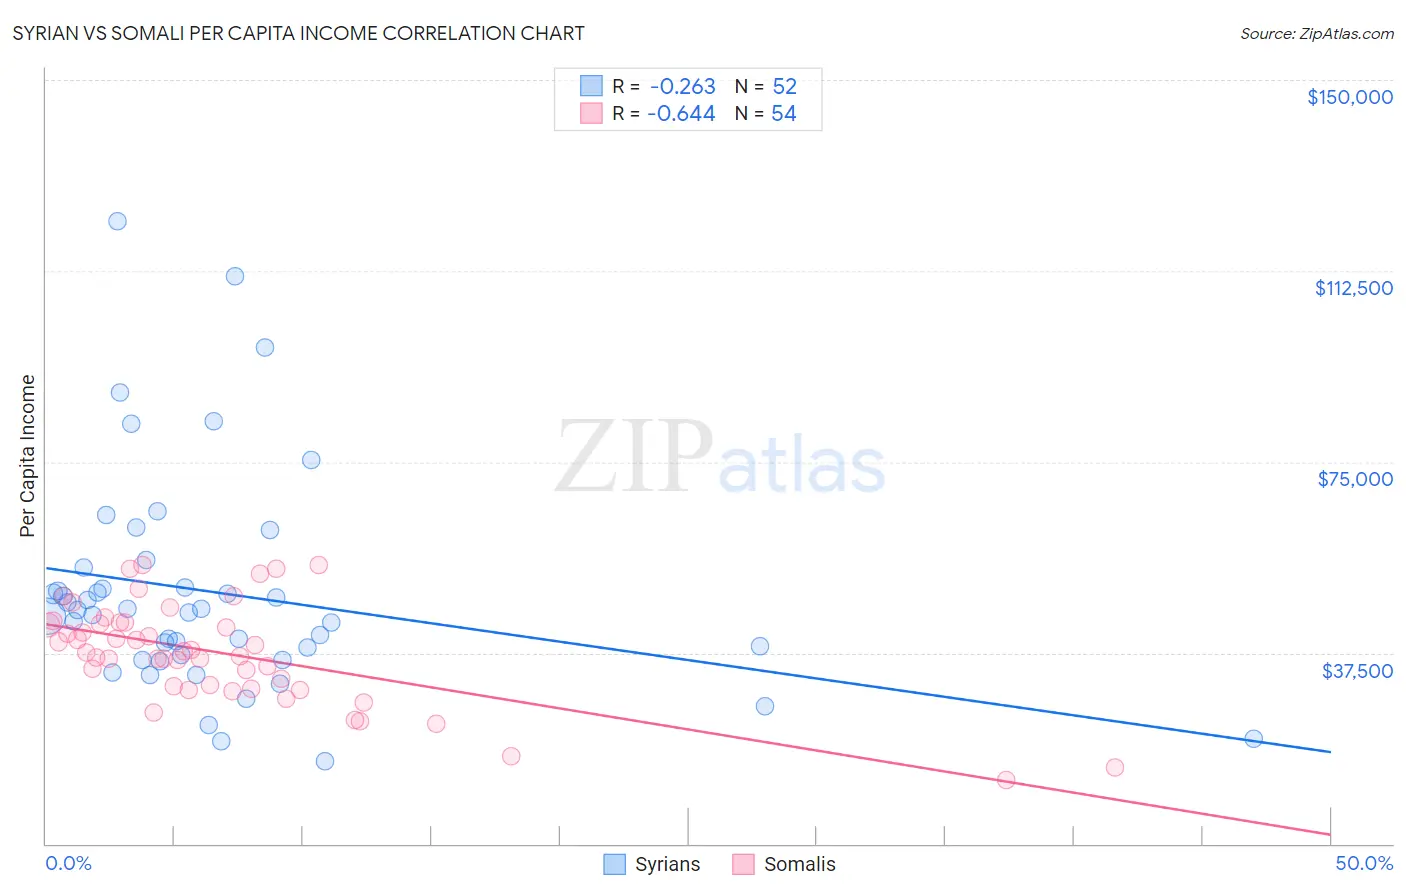 Syrian vs Somali Per Capita Income